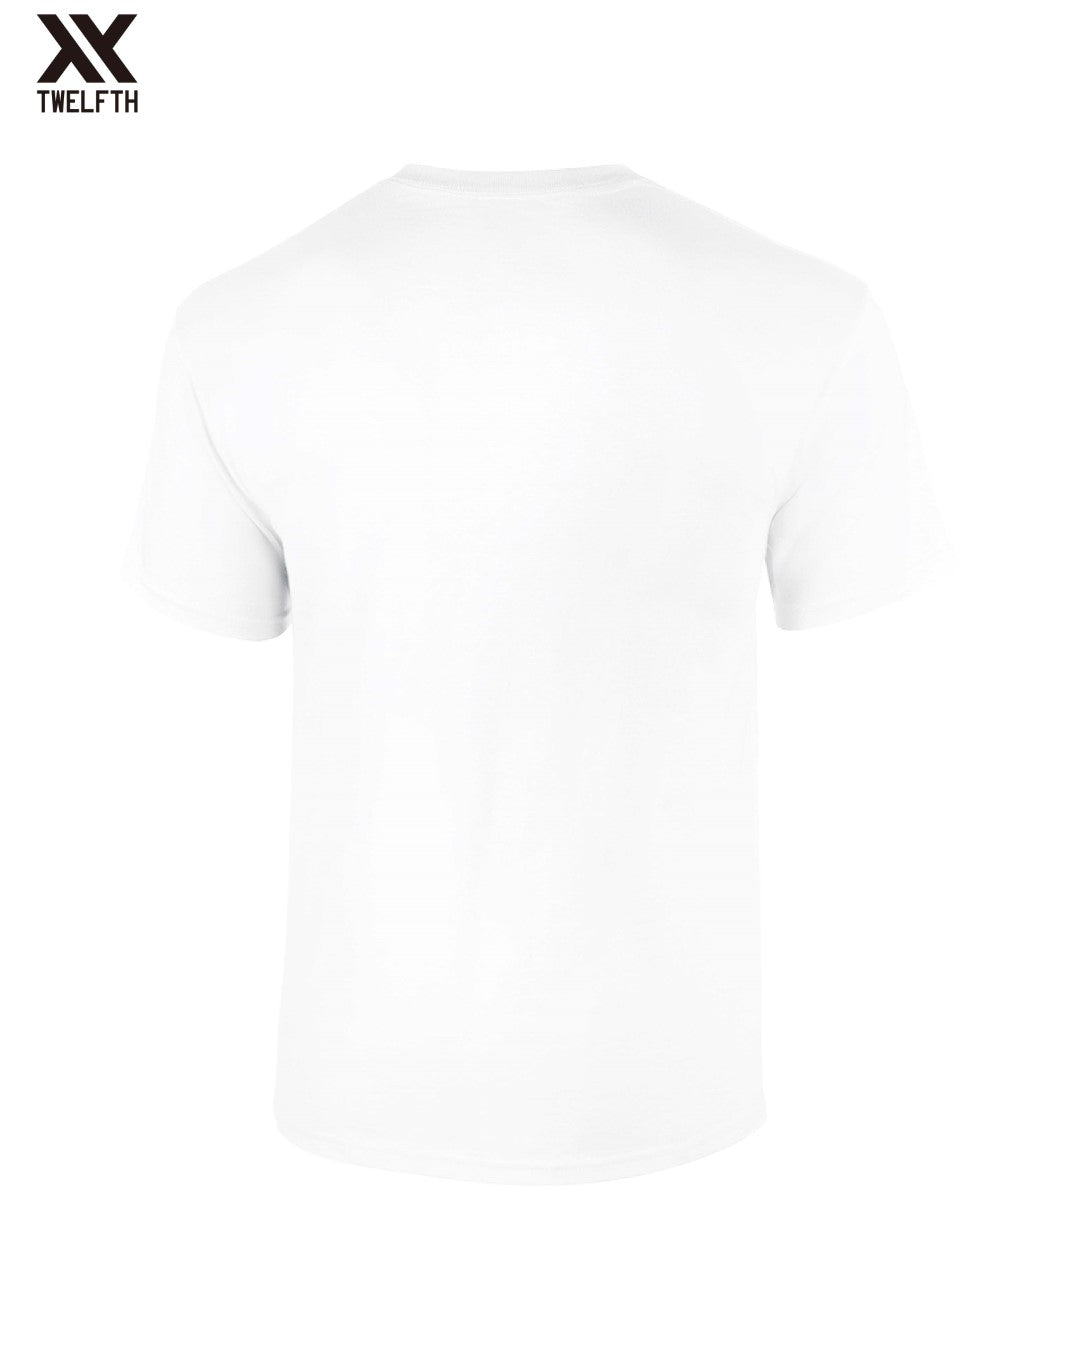 Monaco Crest T-Shirt - Mens